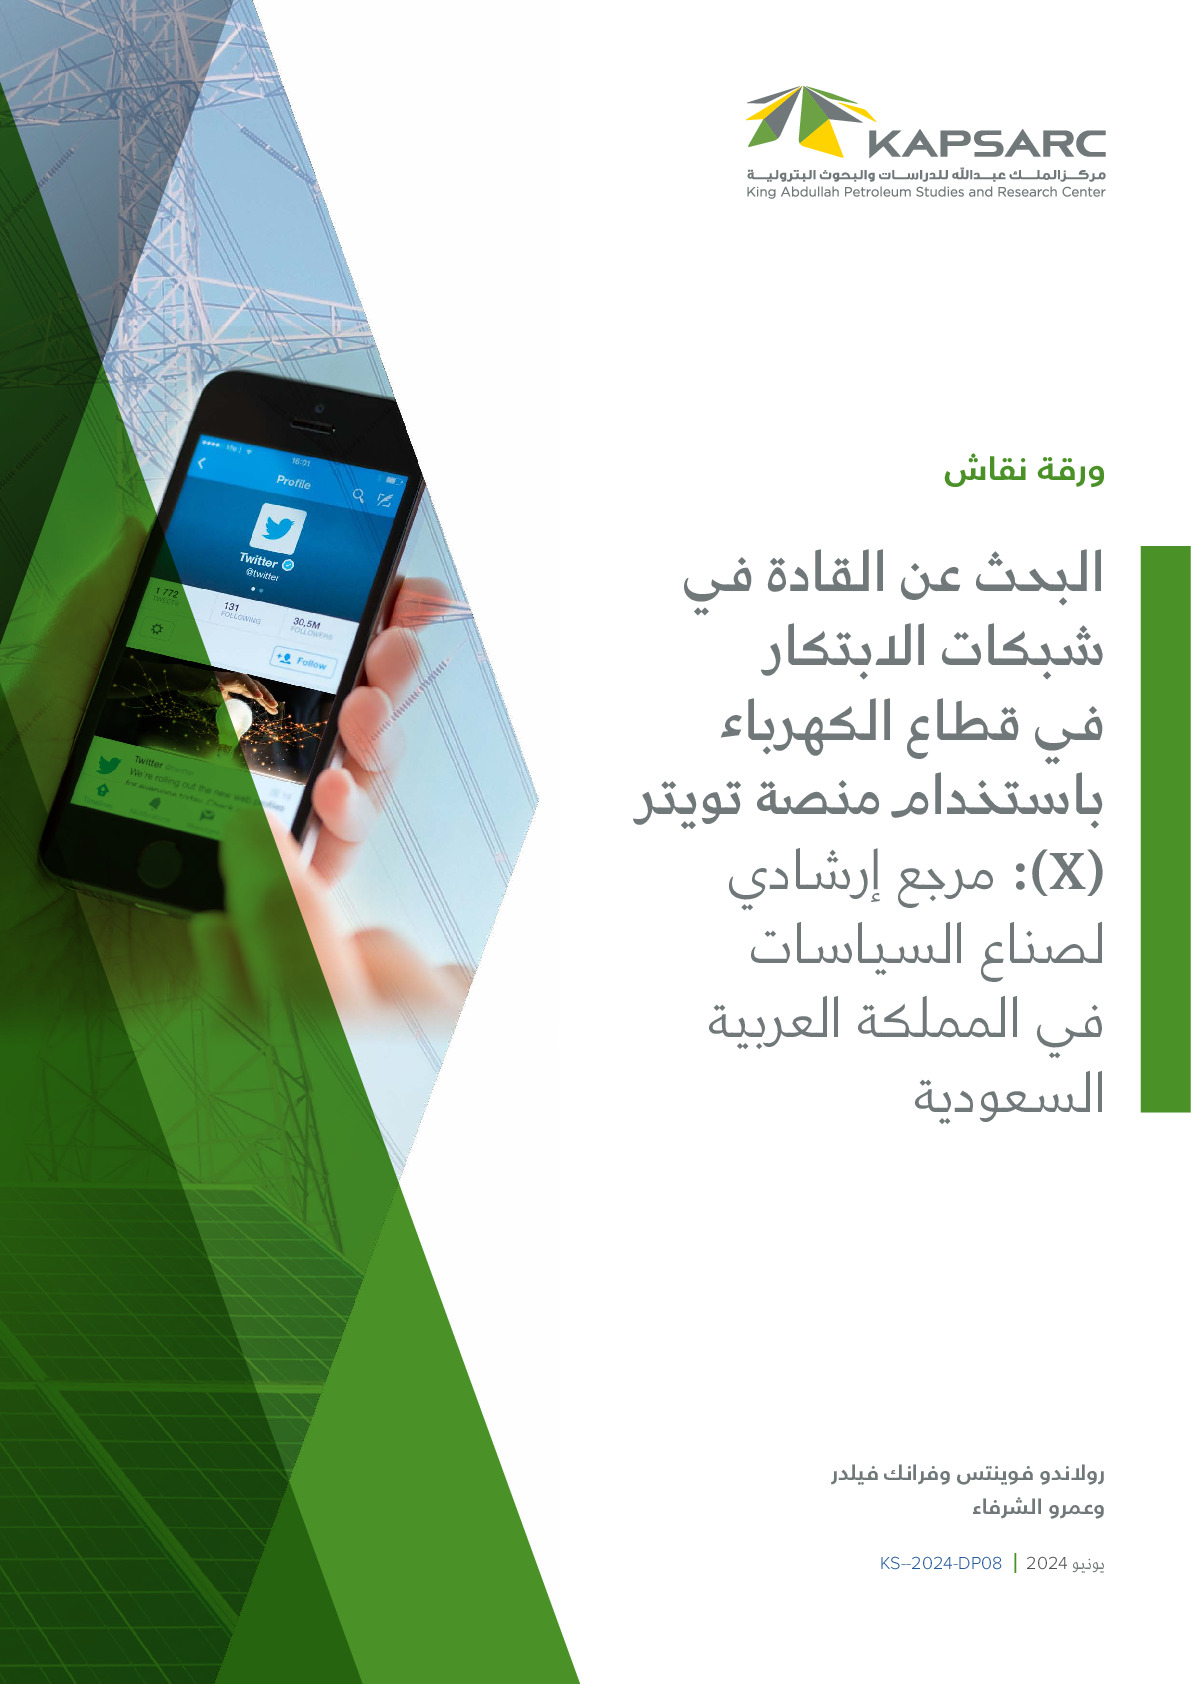 البحث عن القادة في شبكات الابتكار في قطاع الكهرباء باستخدام منصة تويتر (X): مرجع إرشادي لصناع السياسات في المملكة العربية السعودية